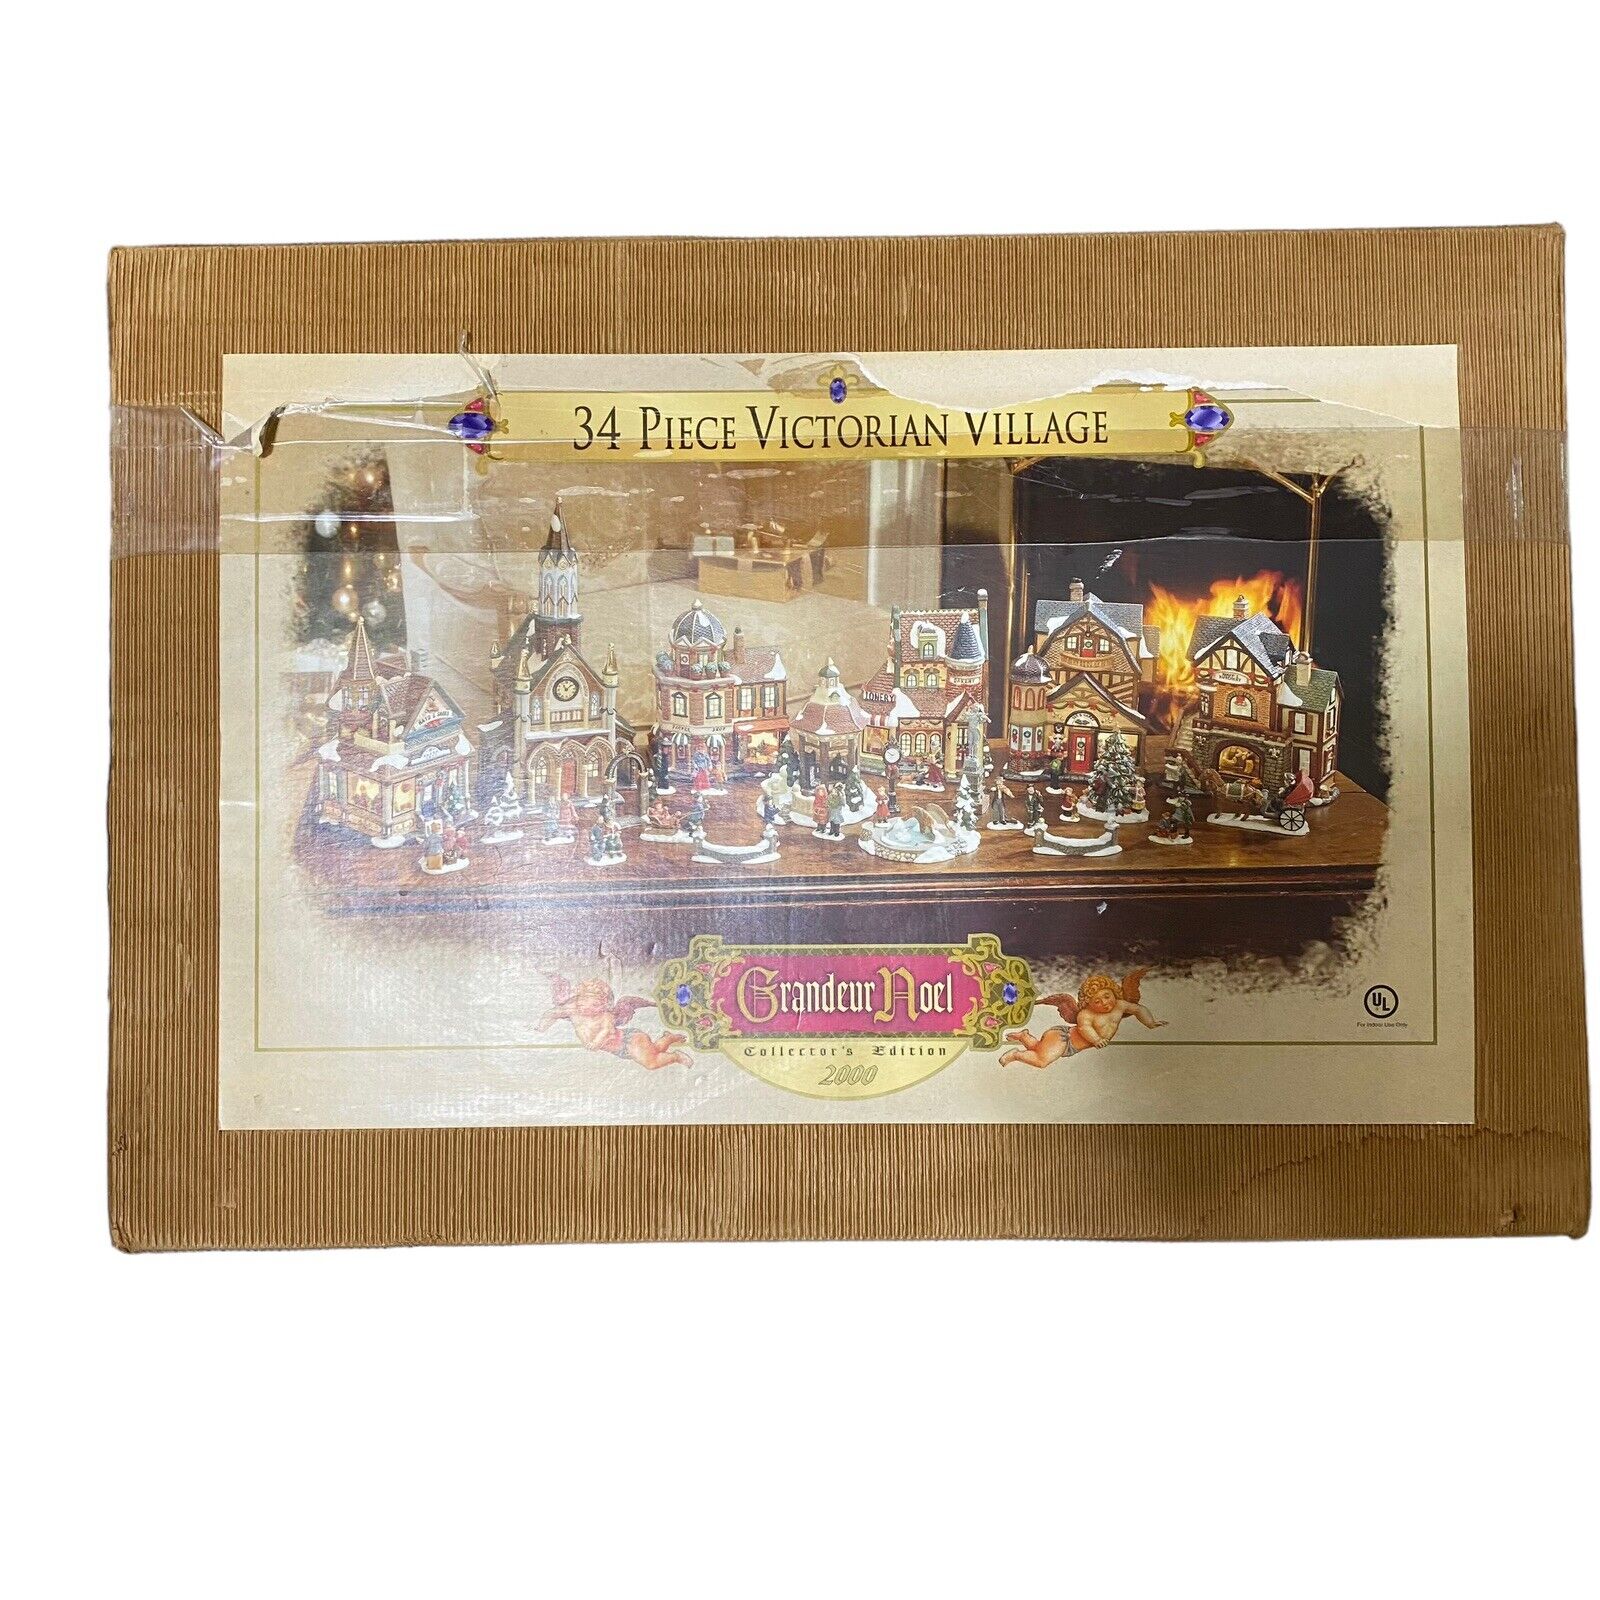 2000 Grandeur Noel Collector’s Edition 34 Pc Victorian Village Set EUC